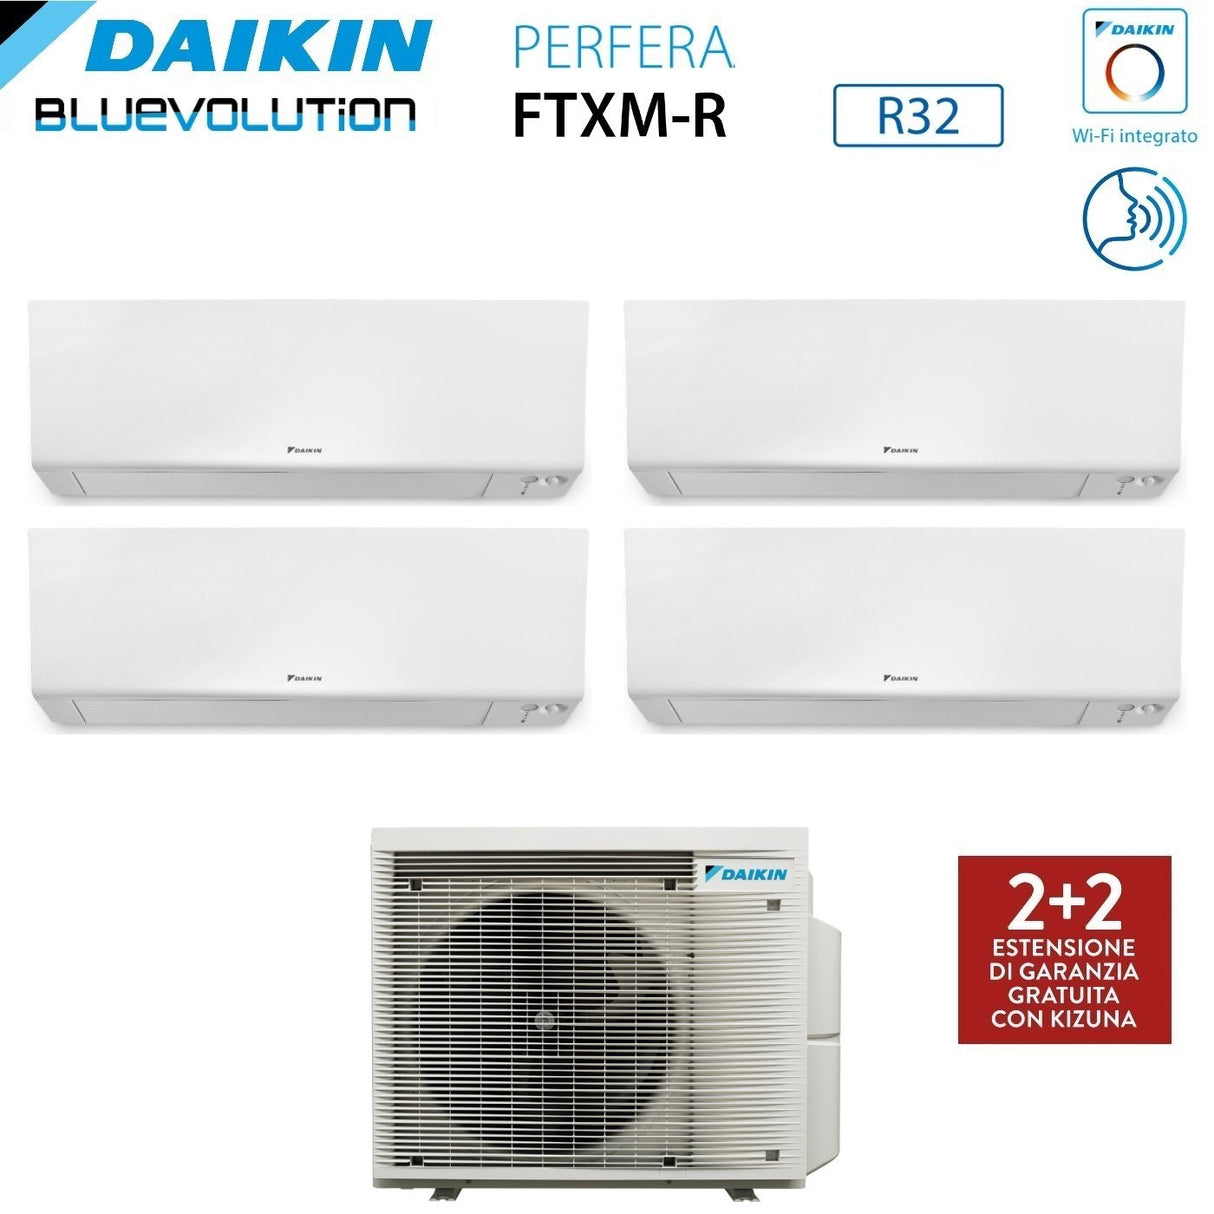 immagine-2-daikin-climatizzatore-condizionatore-daikin-bluevolution-quadri-split-inverter-serie-ftxmr-perfera-wall-791518-con-4mxm80a-r-32-wi-fi-integrato-700090001500018000-garanzia-italiana